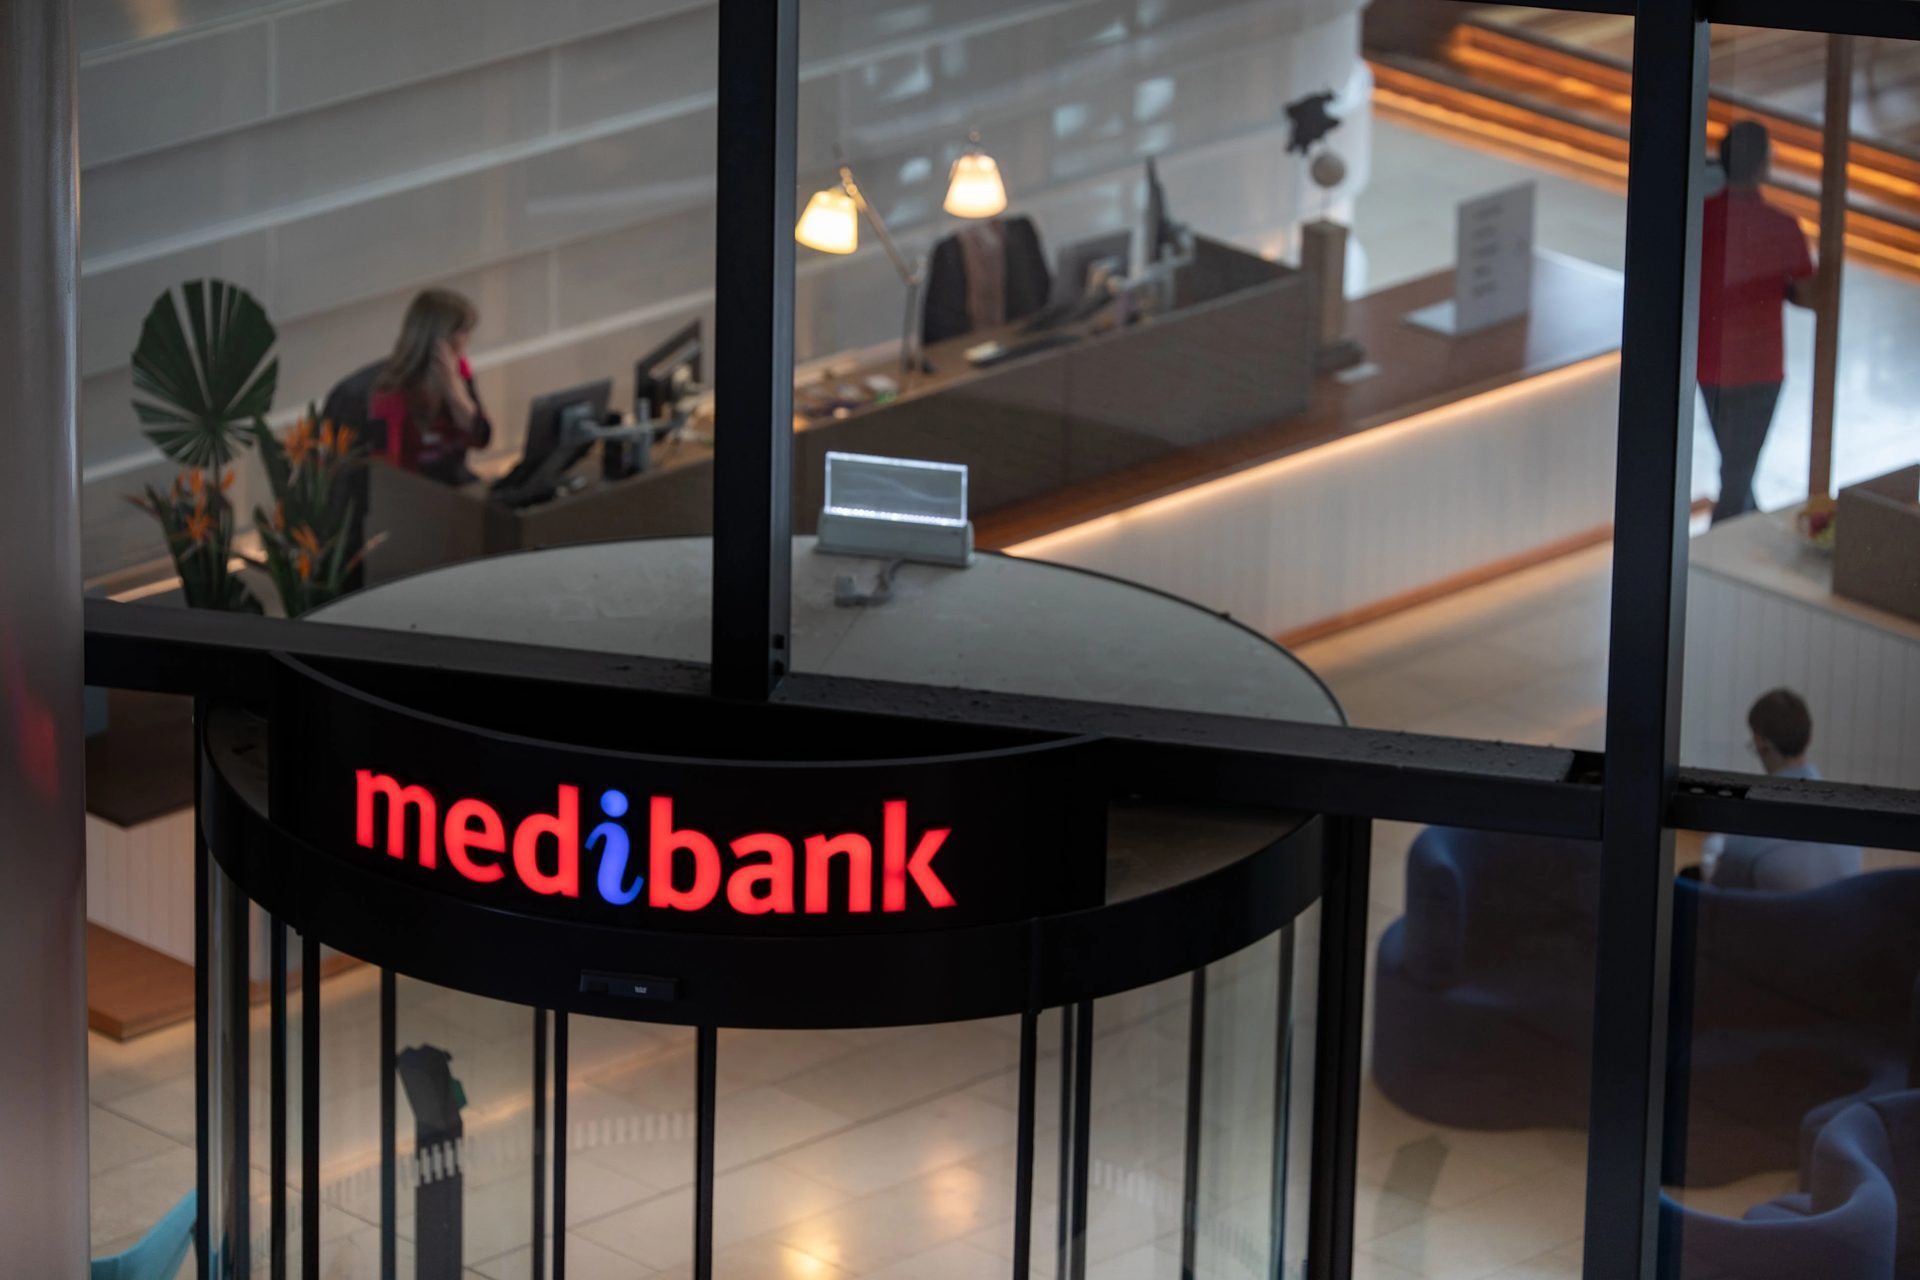 Medibank class action uitgelegd: denk aan het datalek van Medibank, sluit u aan bij de Medibank class action voor datalekken en ontvang een Medibank-vergoeding van maximaal $ 20,000.